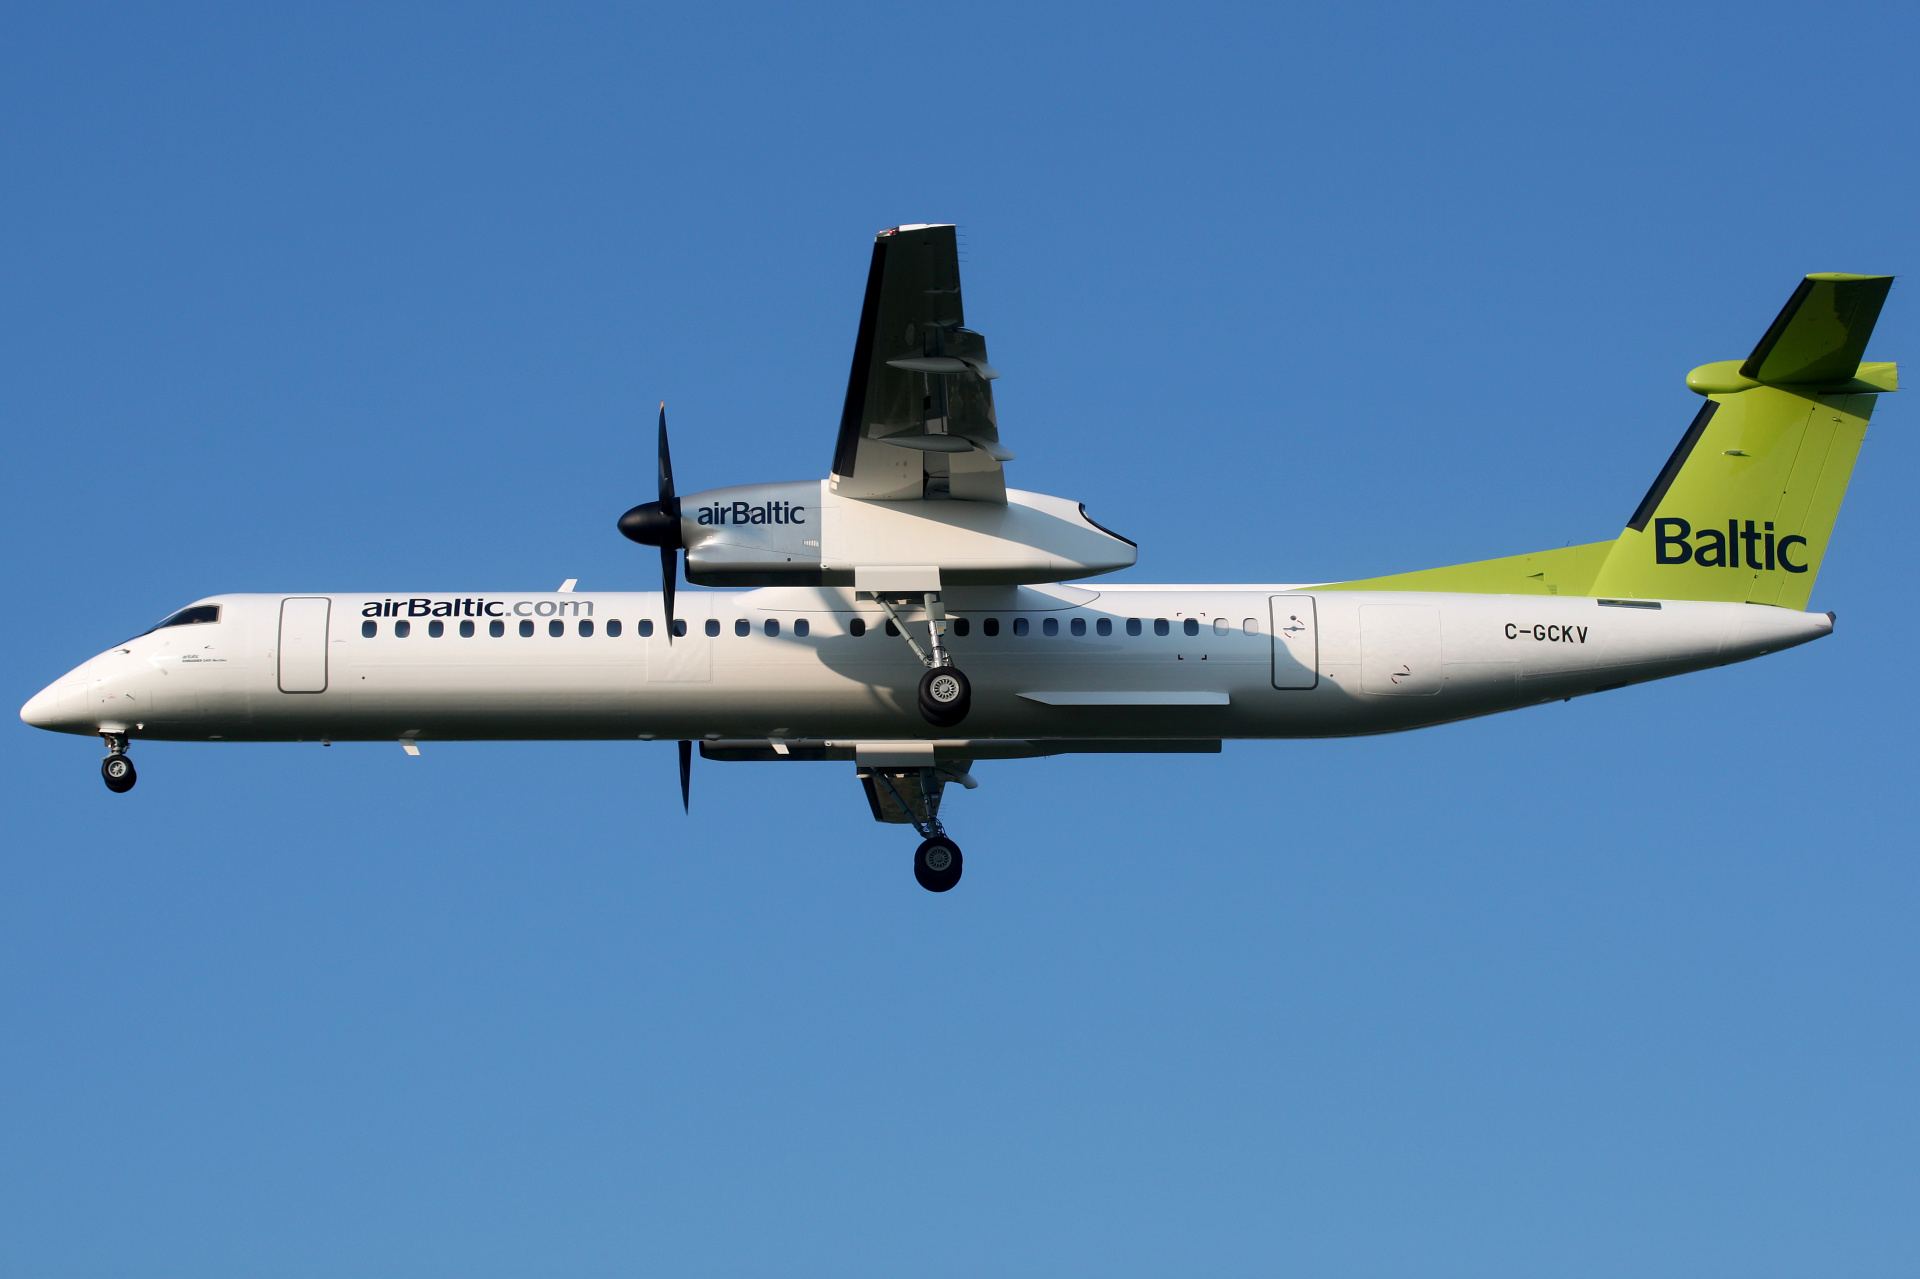 C-GCKV (Samoloty » Spotting na EPWA » De Havilland Canada DHC-8 Dash 8 » airBaltic)